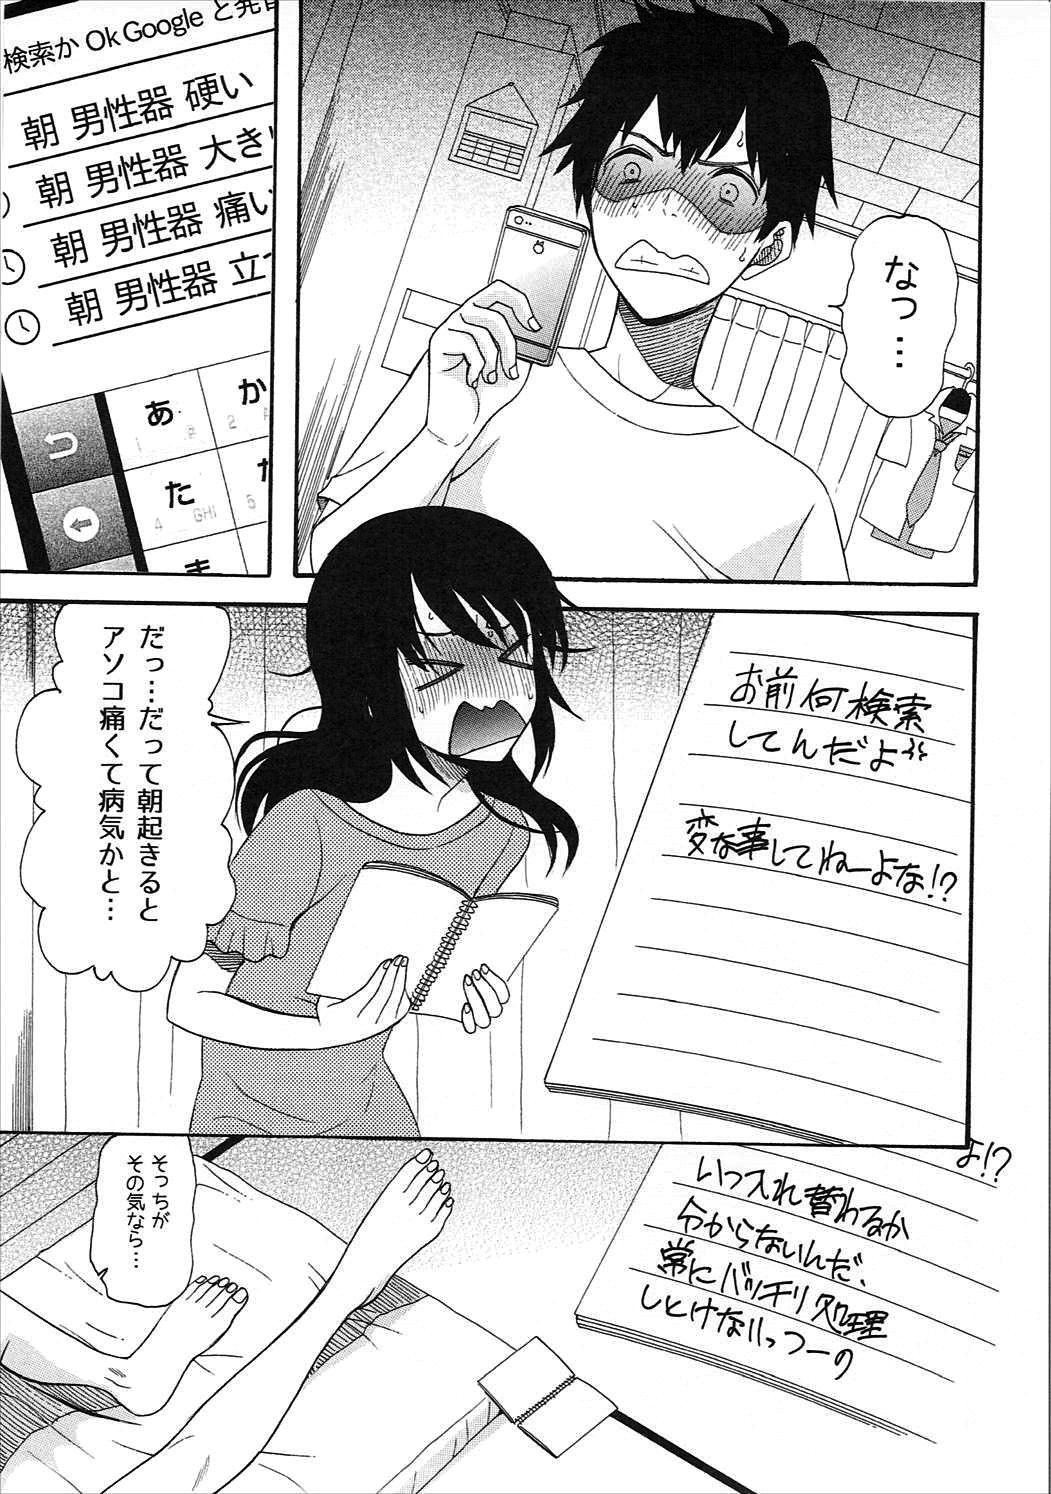 Assfuck Futari no Hibi o. - Kimi no na wa. Compilation - Page 4